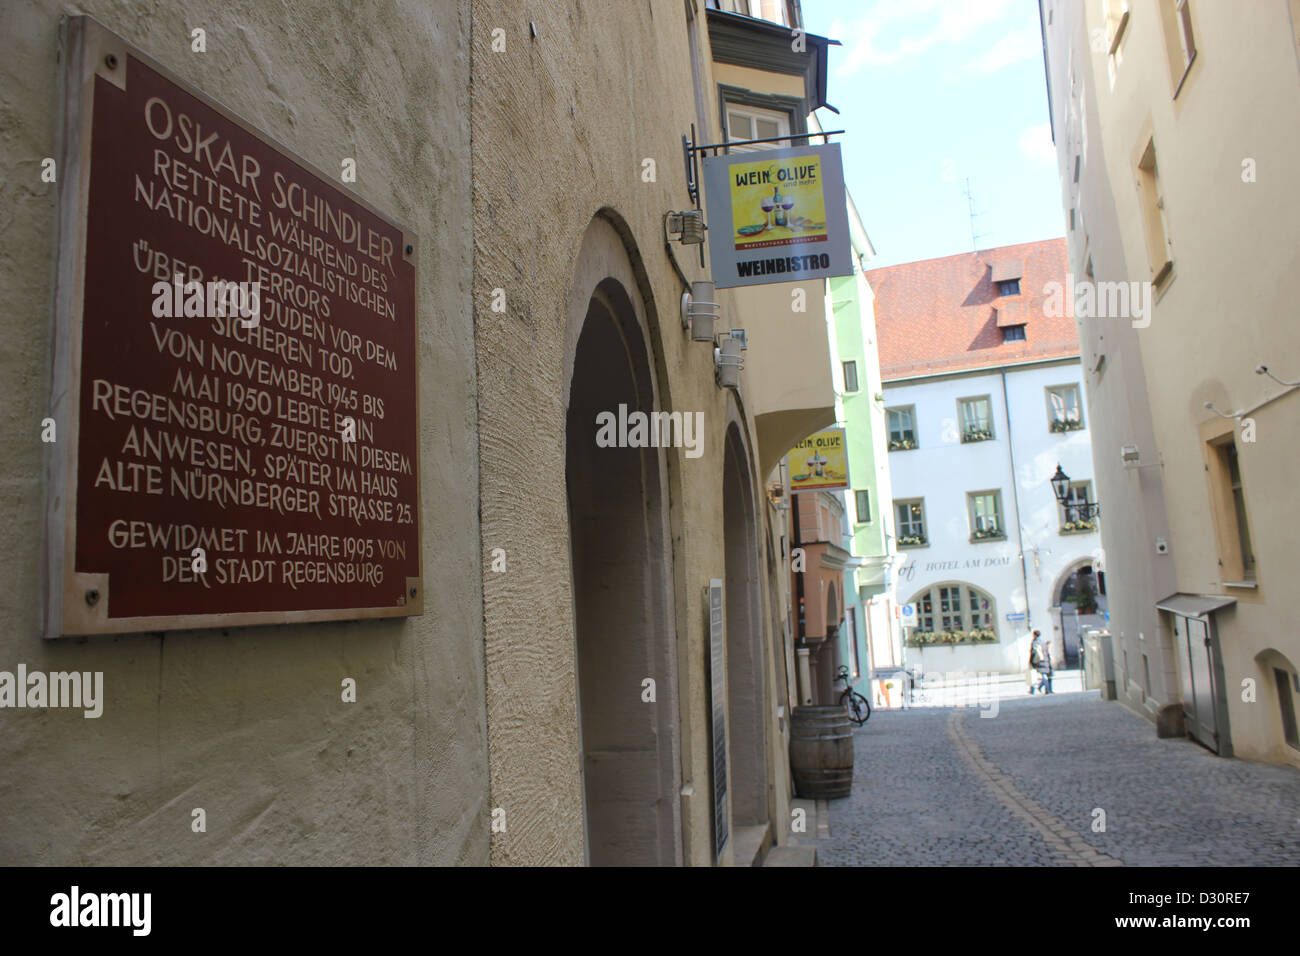 Haus von Oskar Schindler ist gut versteckt in einem Stadtzentrum der deutschen Stadt Regensburg. Stockfoto